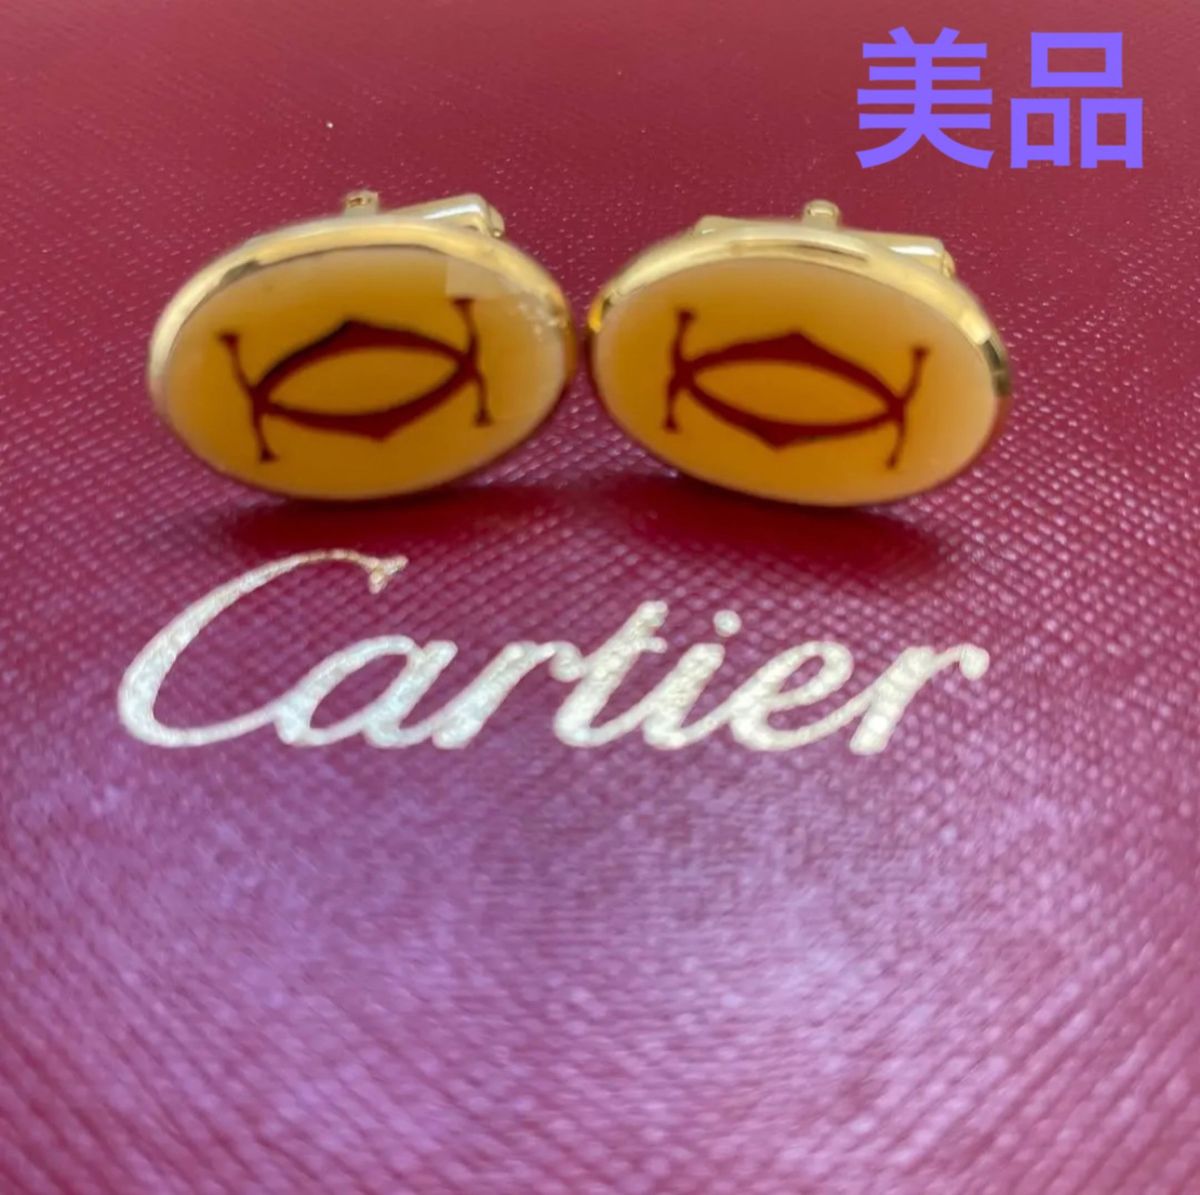 Cartier カルティエ 2Cオーバルビンテージカフス ゴールド イエロー 美品